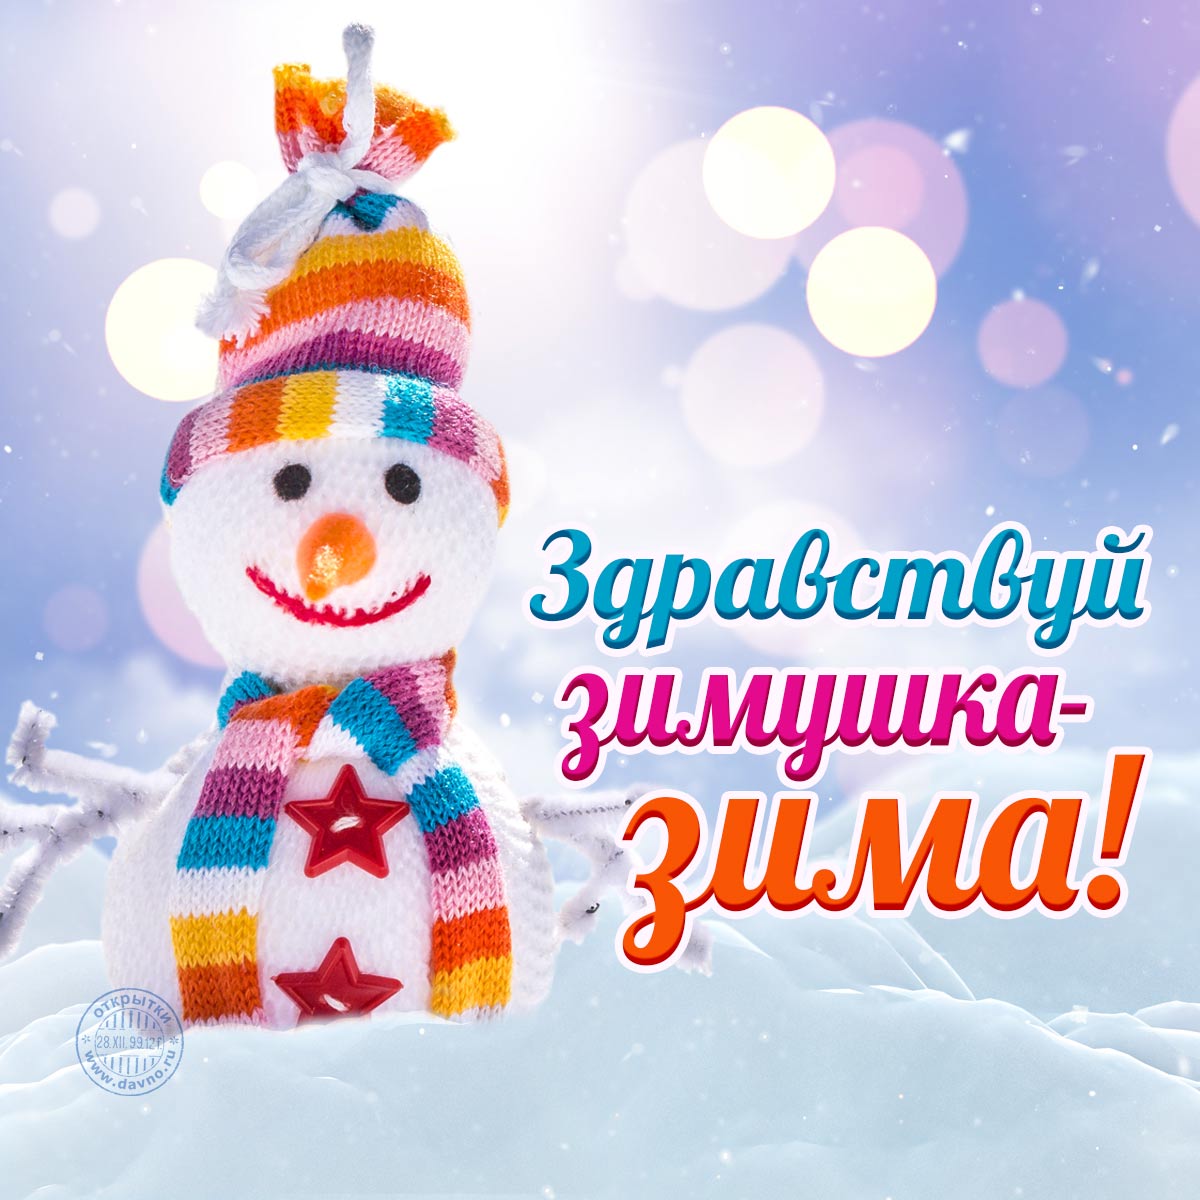 Здравствуй зимушка-зима! Новая открытка с началом зимы 2021-2022.